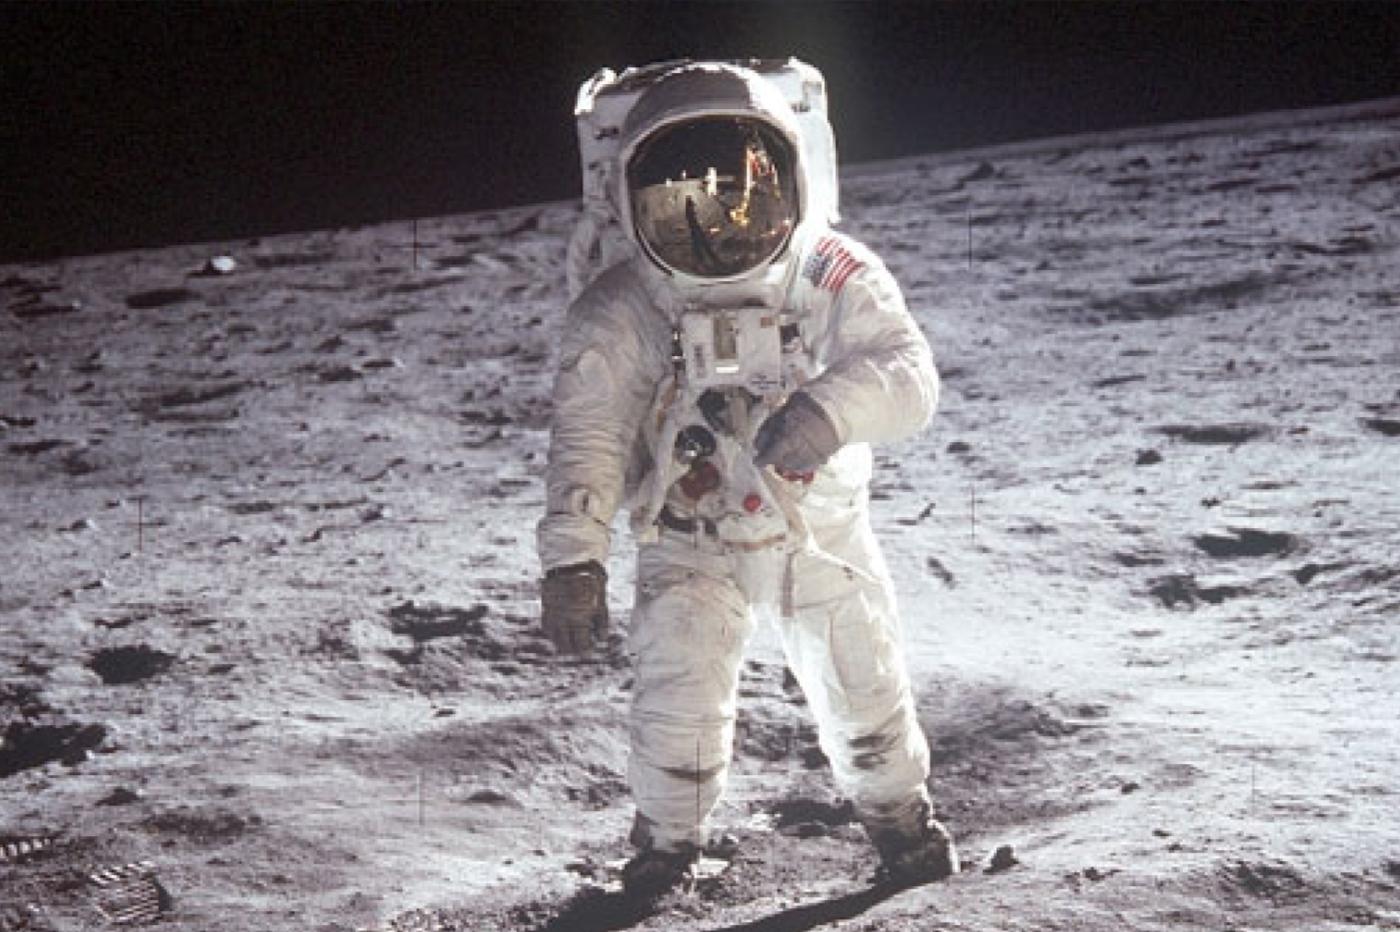 La légendaire photo A Man on the Moon